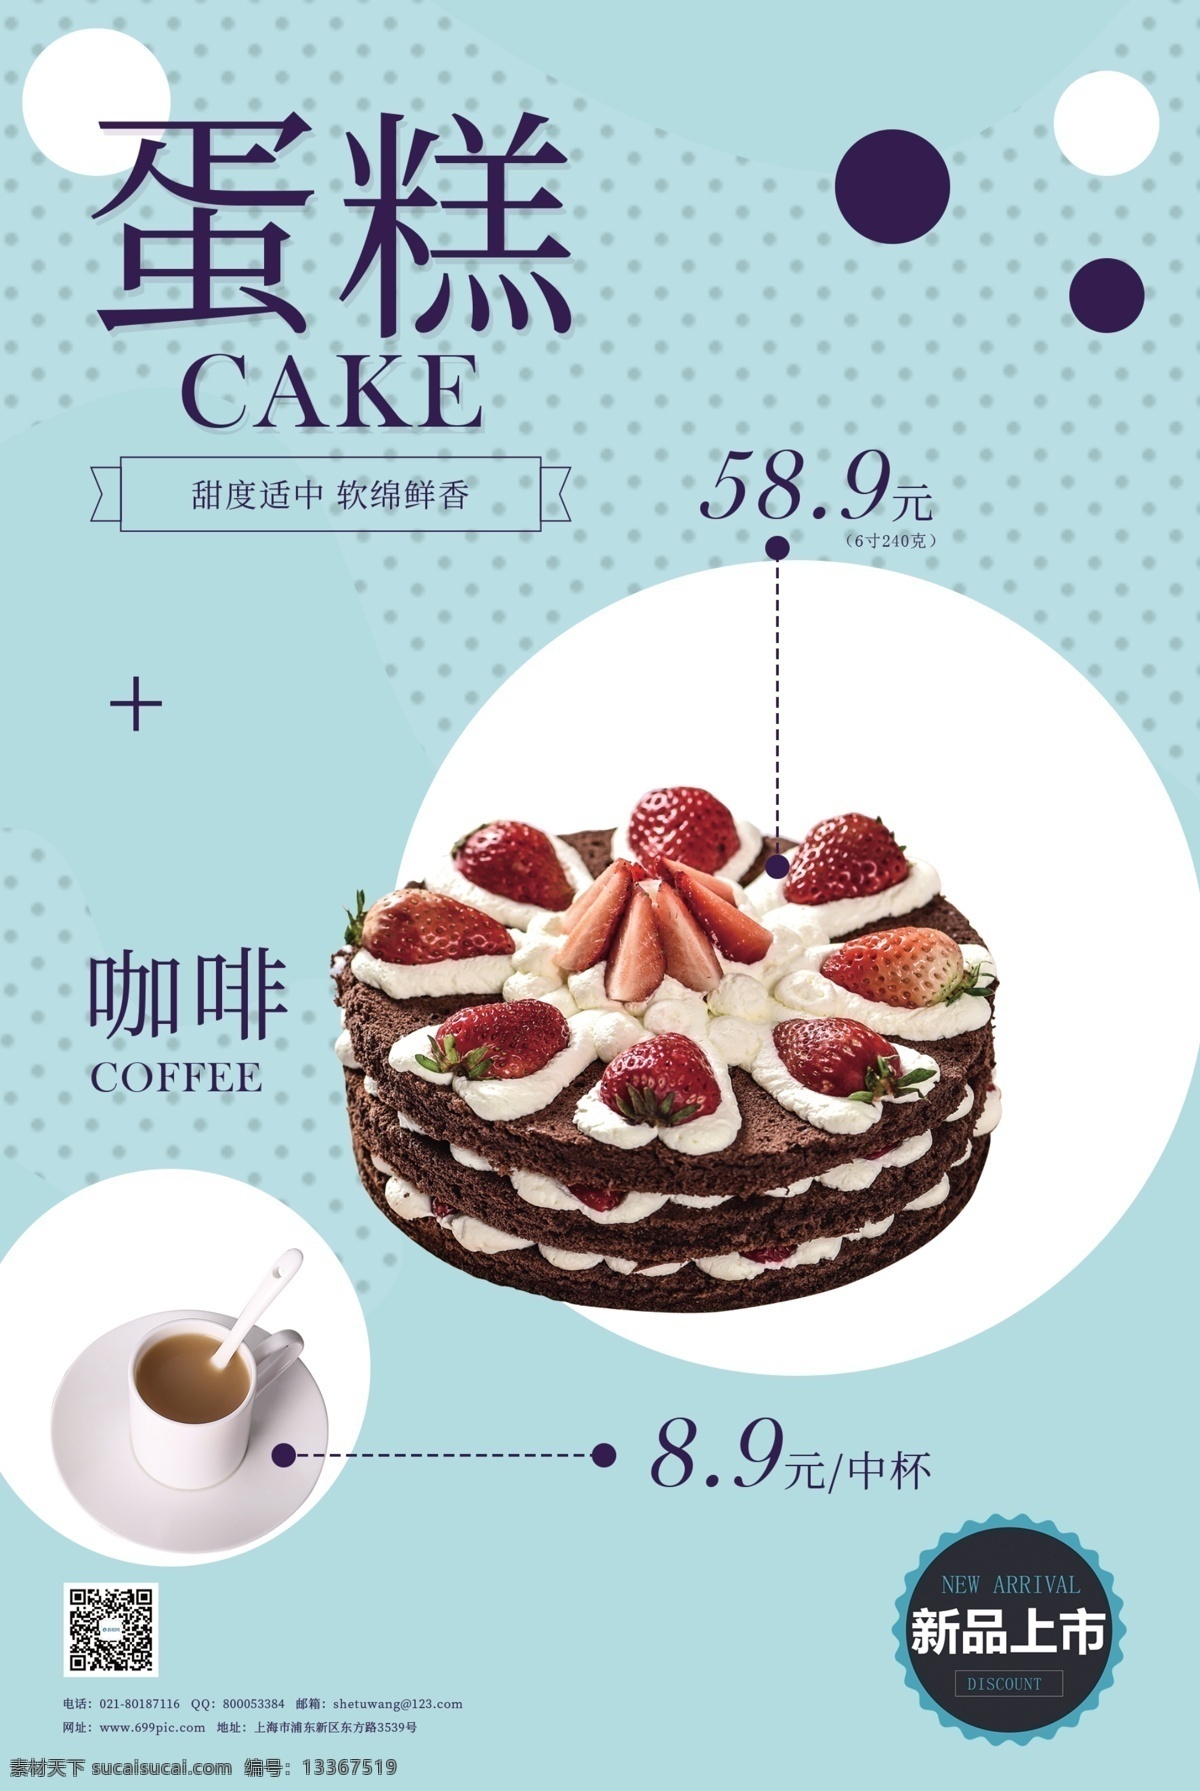 蛋糕促销海报 促销 促销海报 美食促销 新品上市 新款 温馨甜品店 简约 蛋糕 糕点